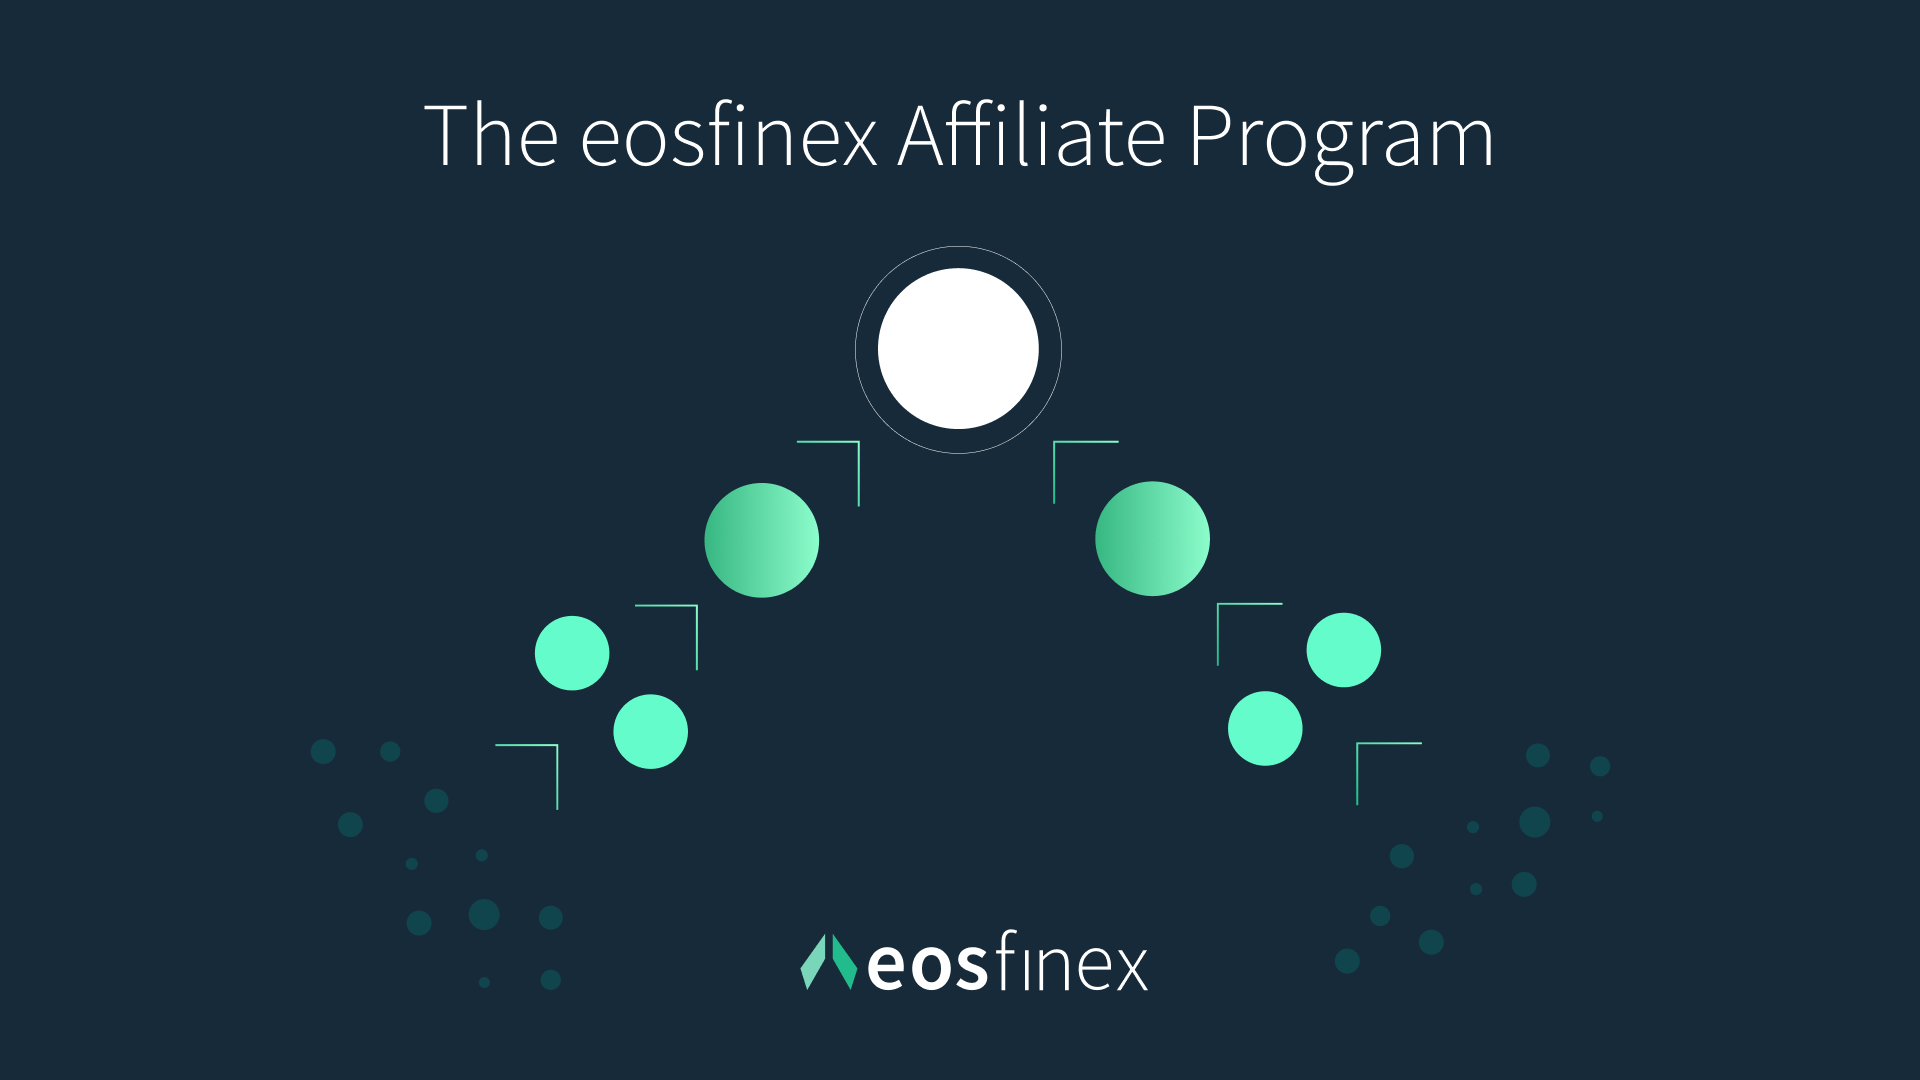 eosfinex 推出新的会员计划